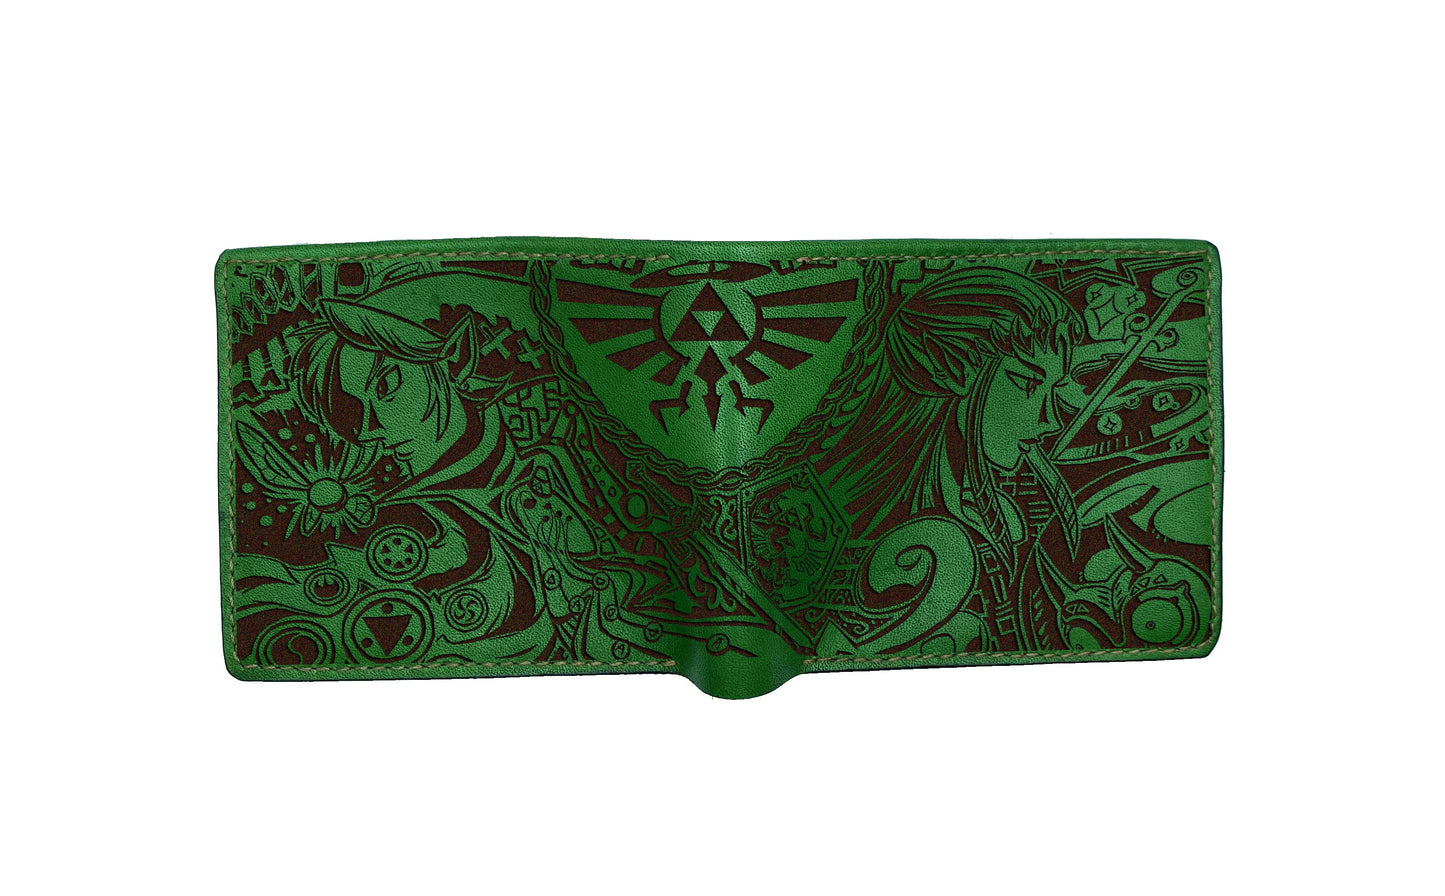 Legend of Zelda leather men's wallet, custom engraving wallet, gift for gamer, Zelda pattern gift for him